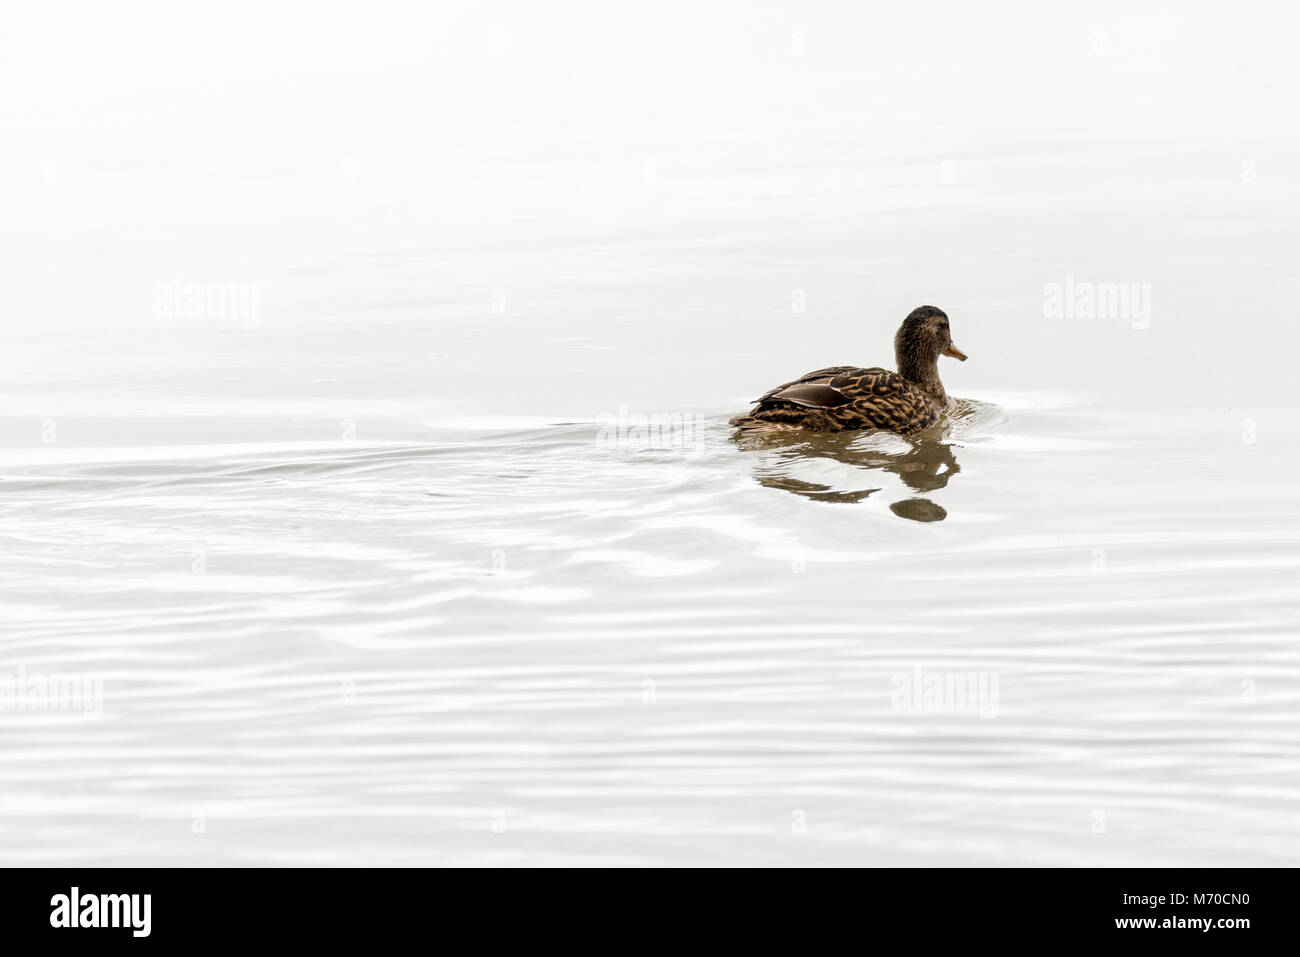 Eine einsame weibliche Stockente Ente schwimmt Weg entlang einige noch Wasser eines Flusses. Stockfoto